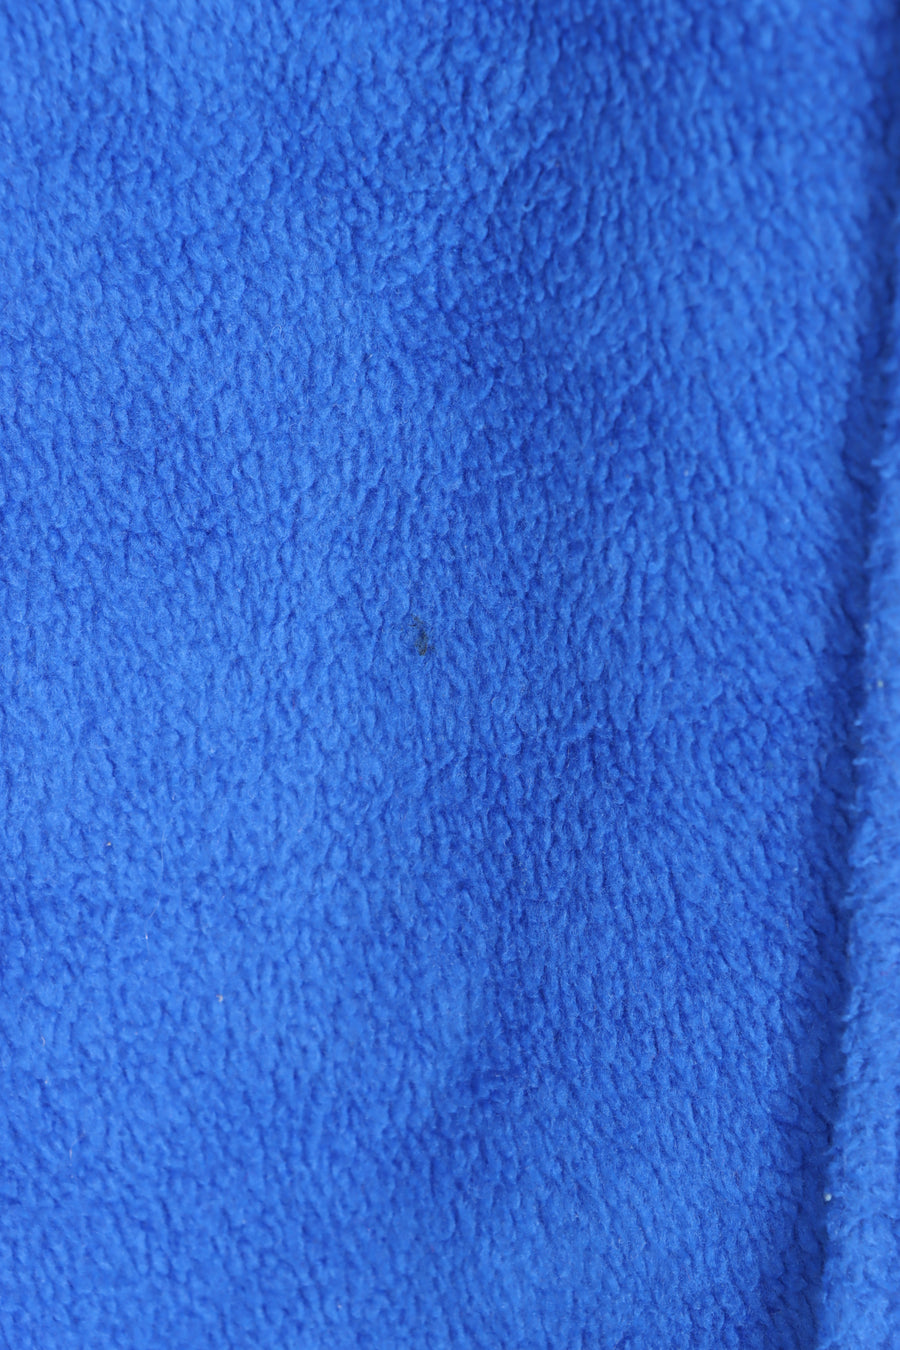 DKNY Blue Snap Button Fleece Shacket (L)